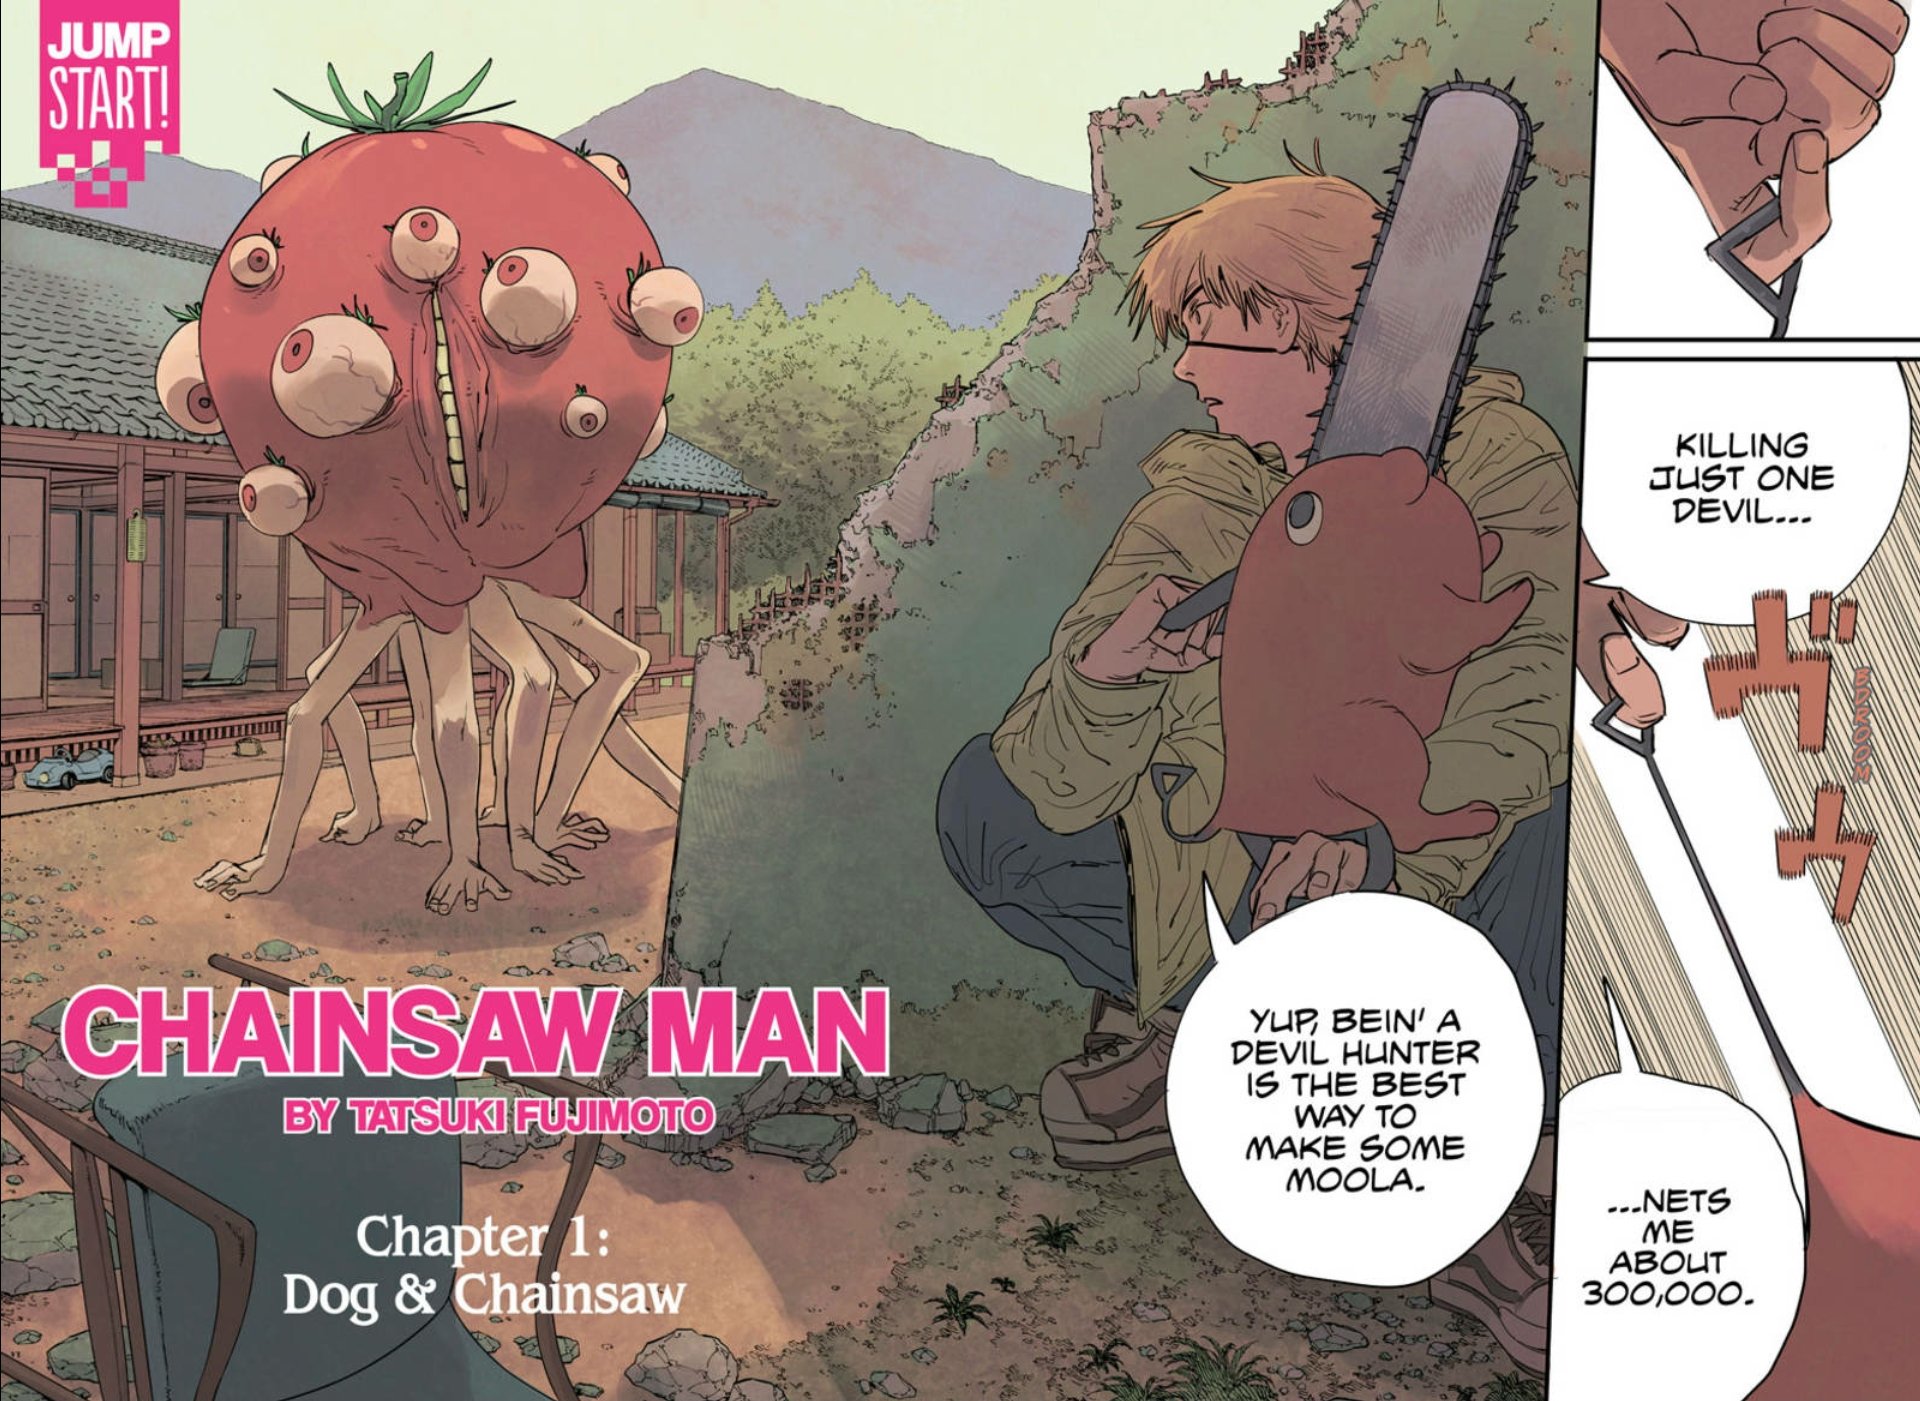 Kumi on X: Chainsaw Man Episode 2 Preview stills #chainsawman   / X